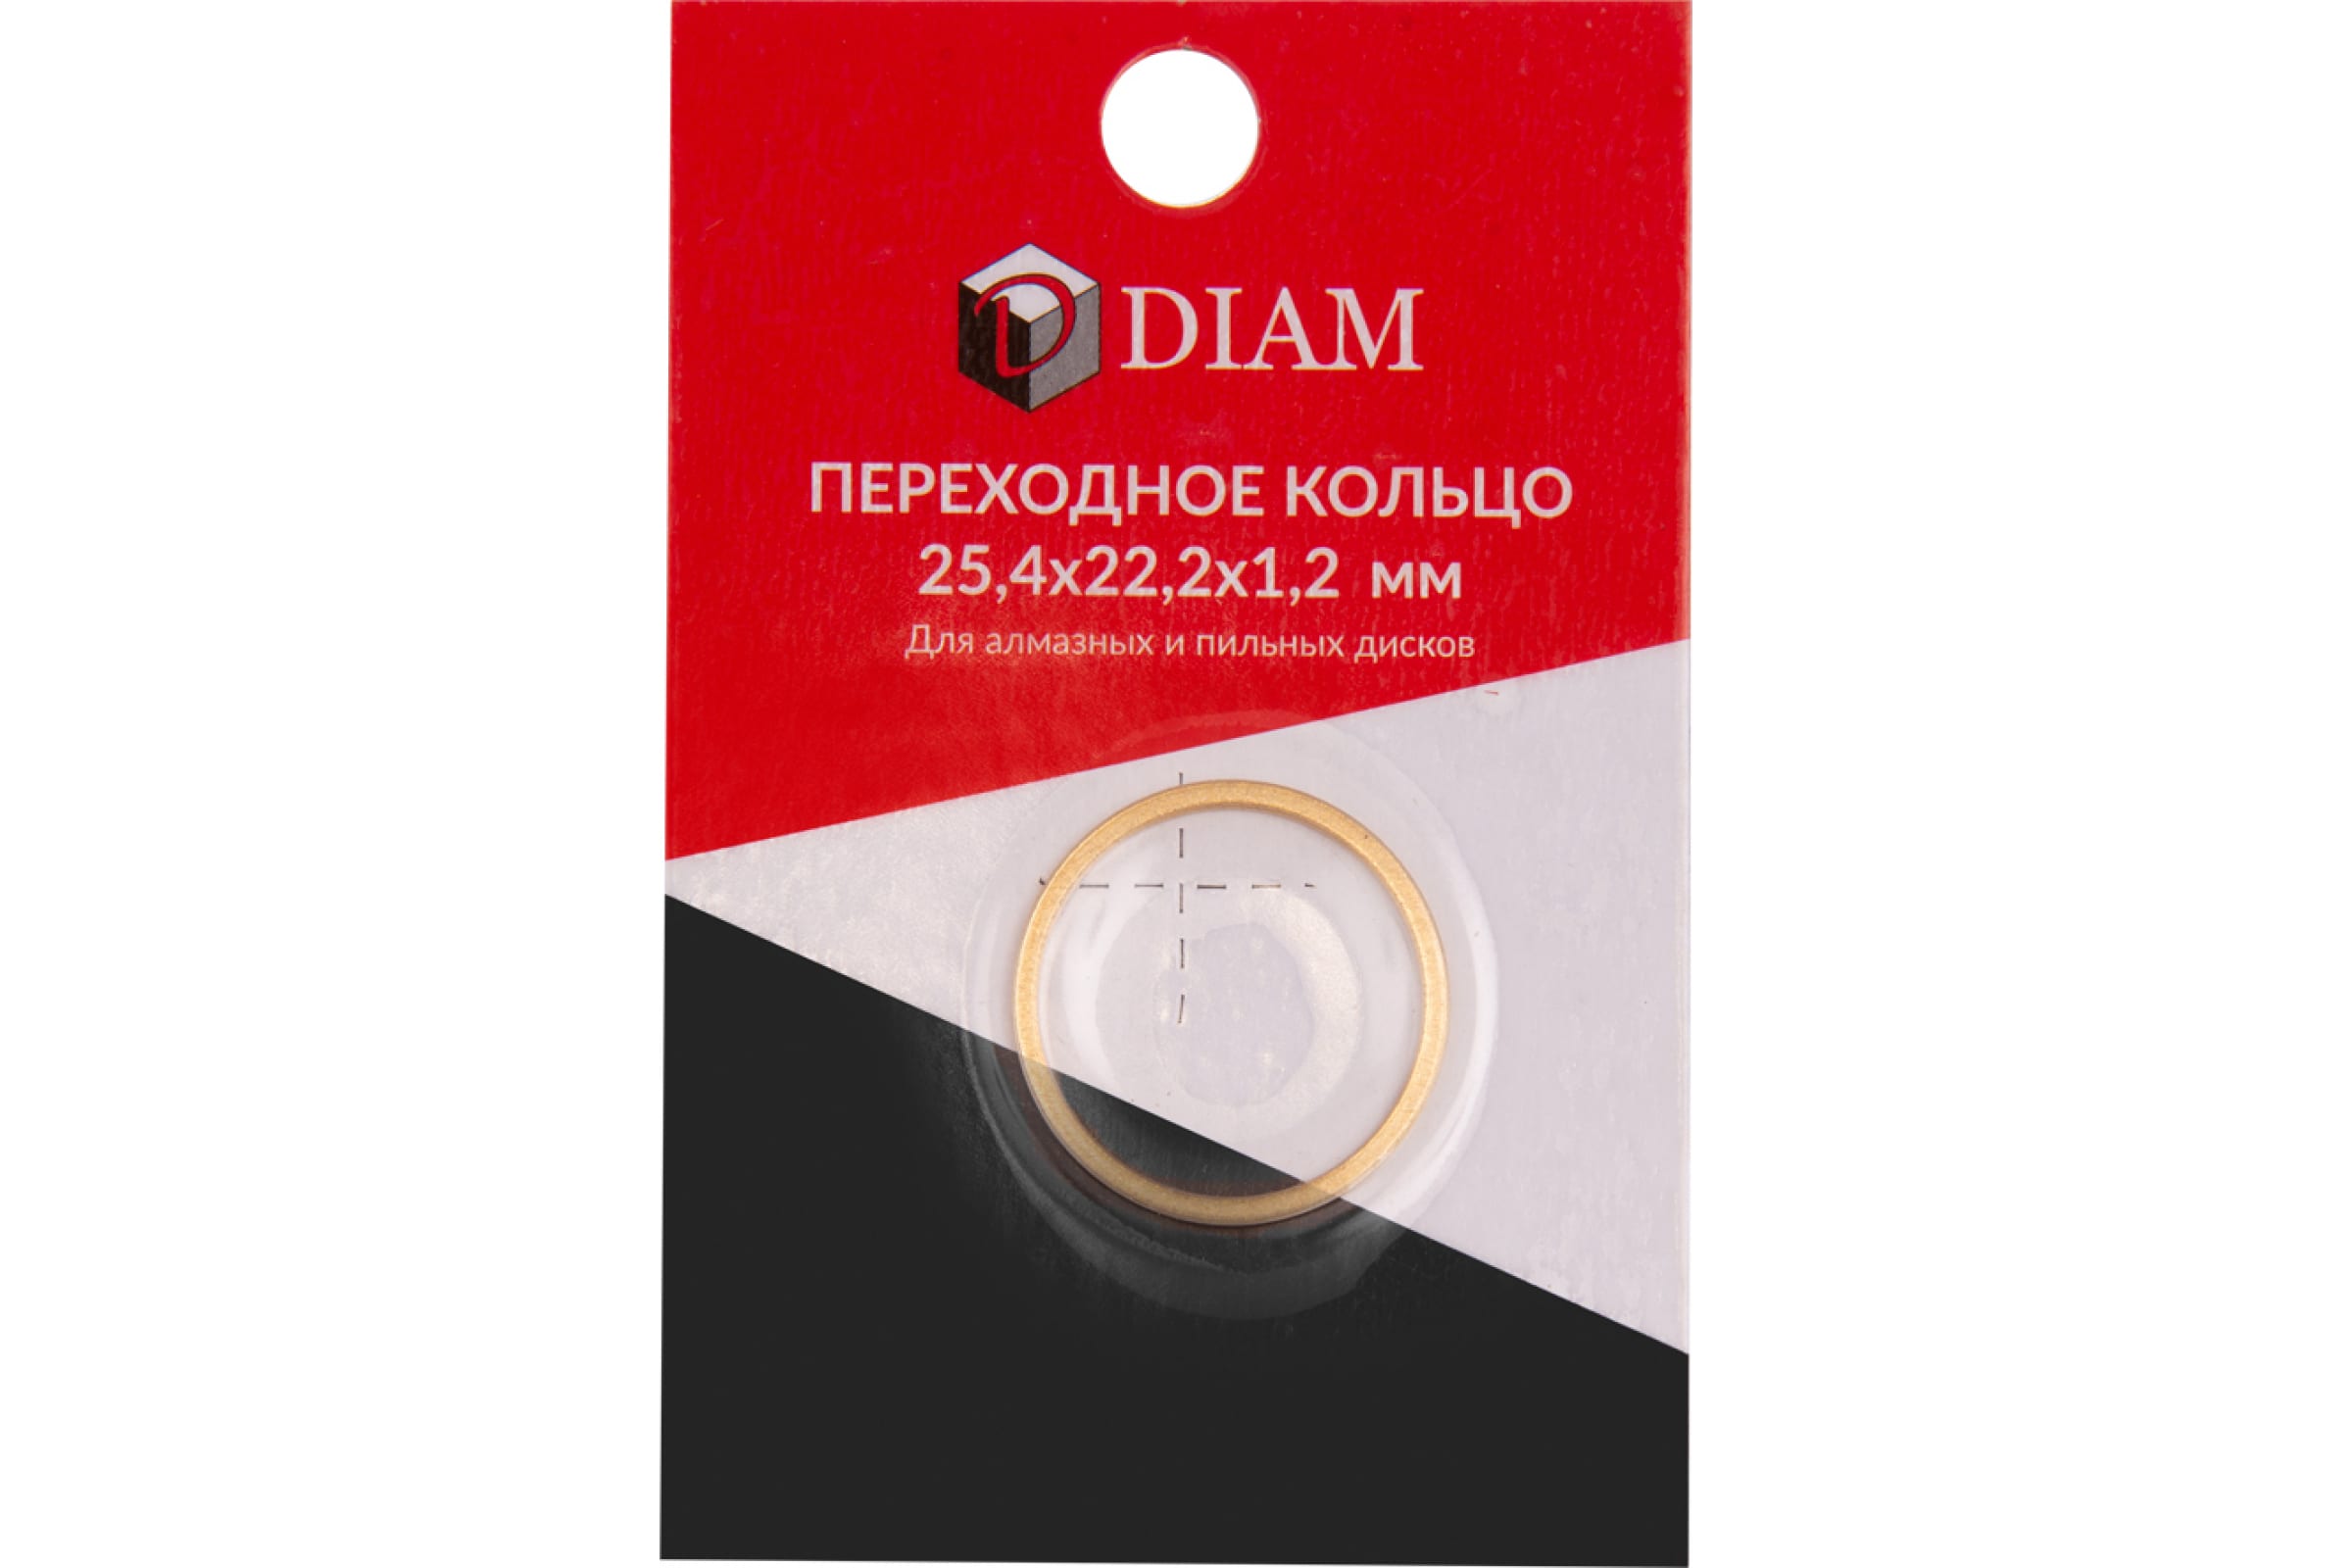 DIAM Переходное кольцо 25,4х22,2х1,2 640084 стопорное кольцо для пневматического насоса diam 42 piusi